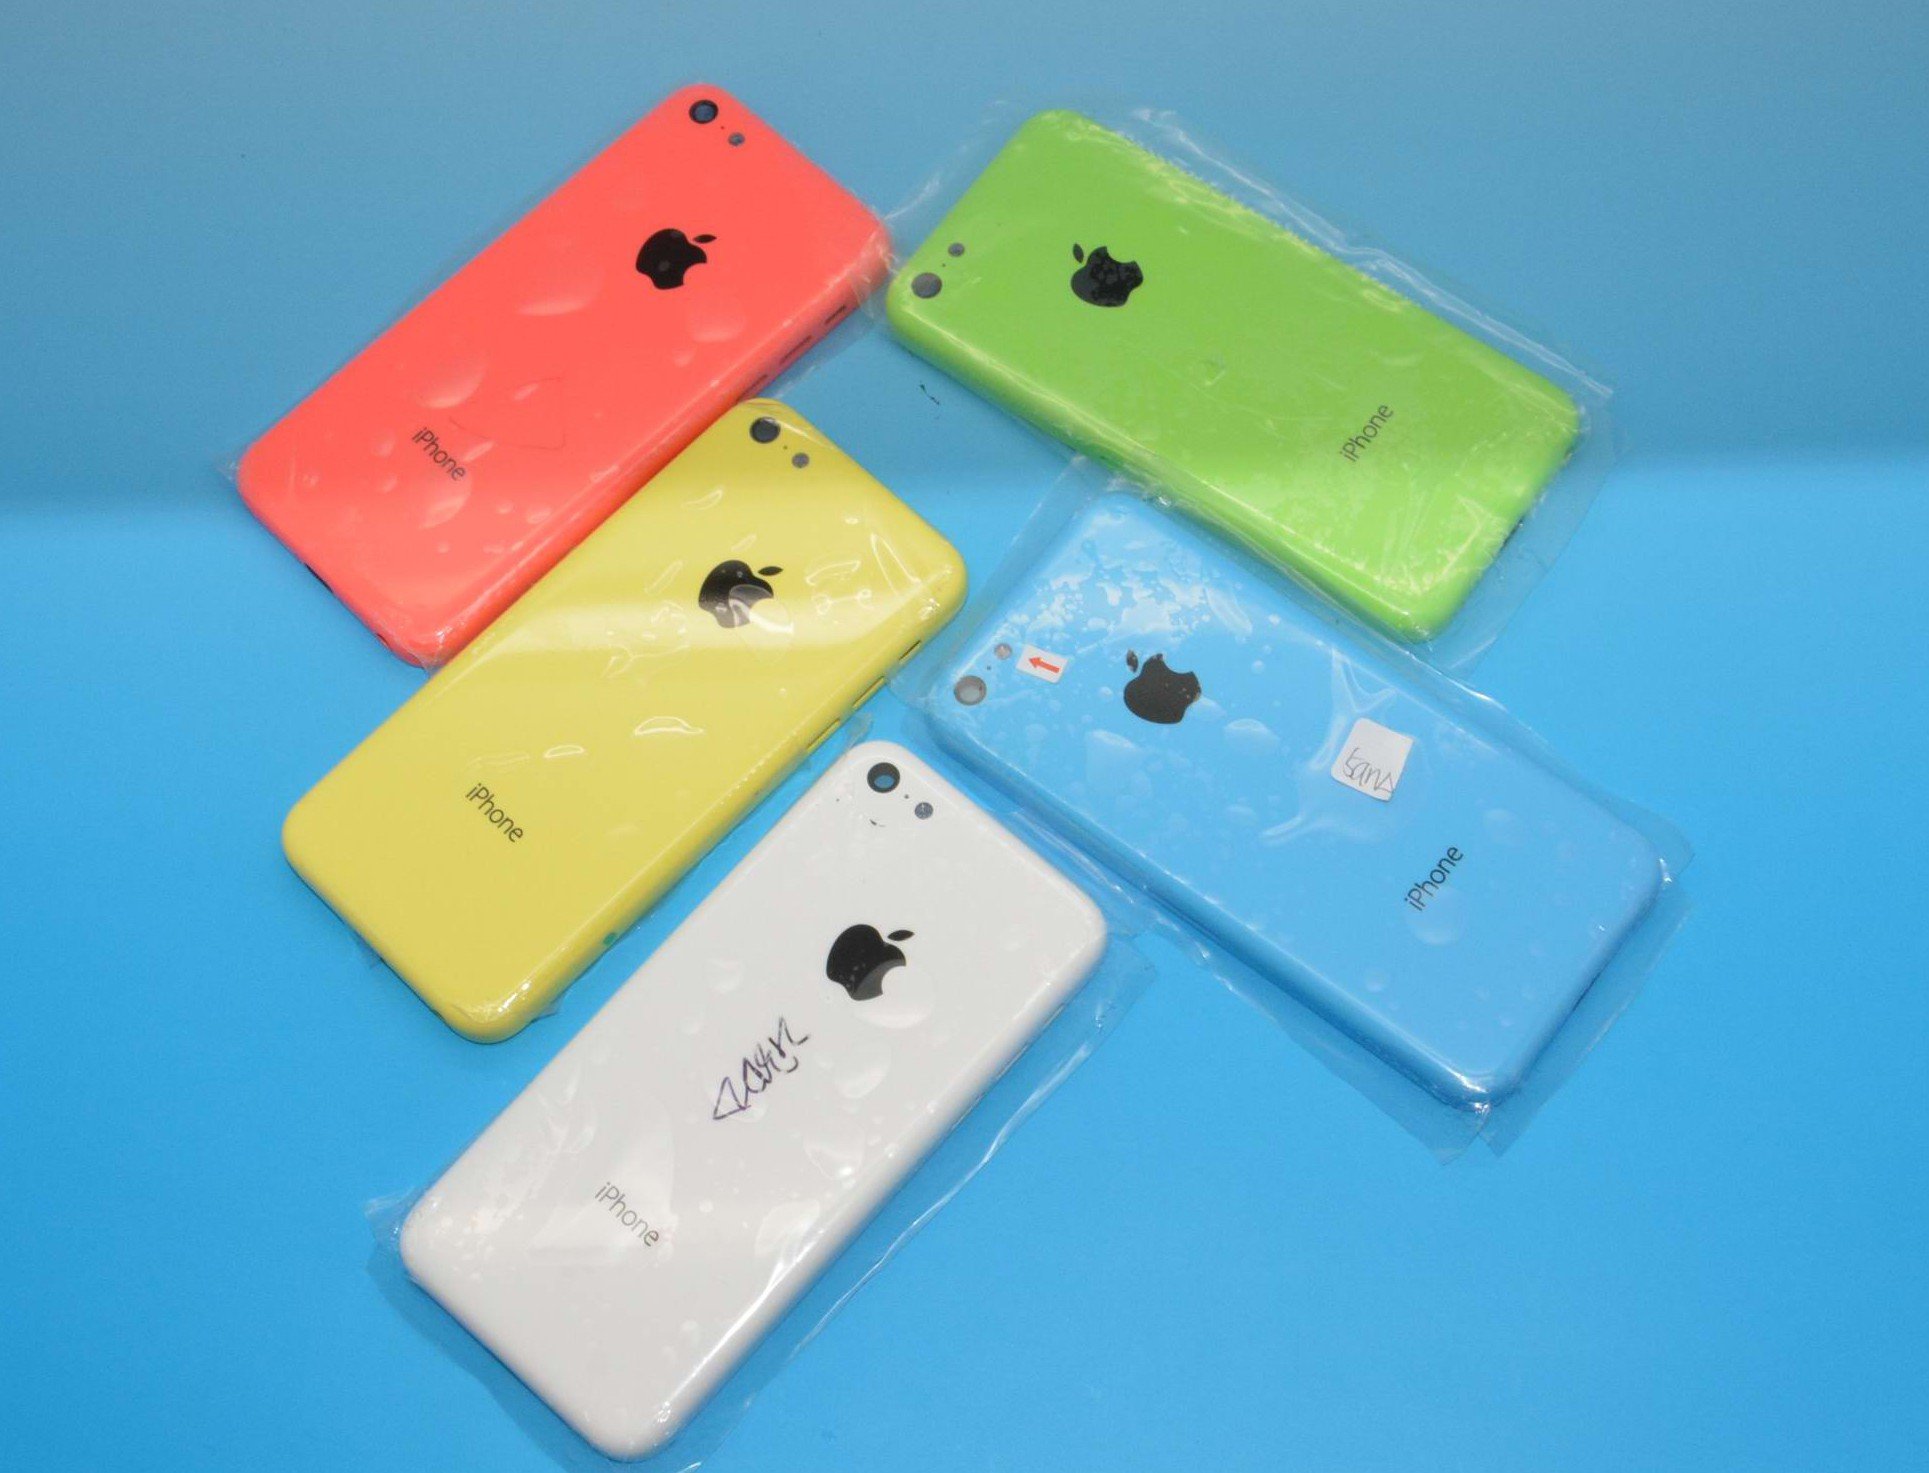 Fotos iPhone 5C: alle Farben, kein schwarz? 9